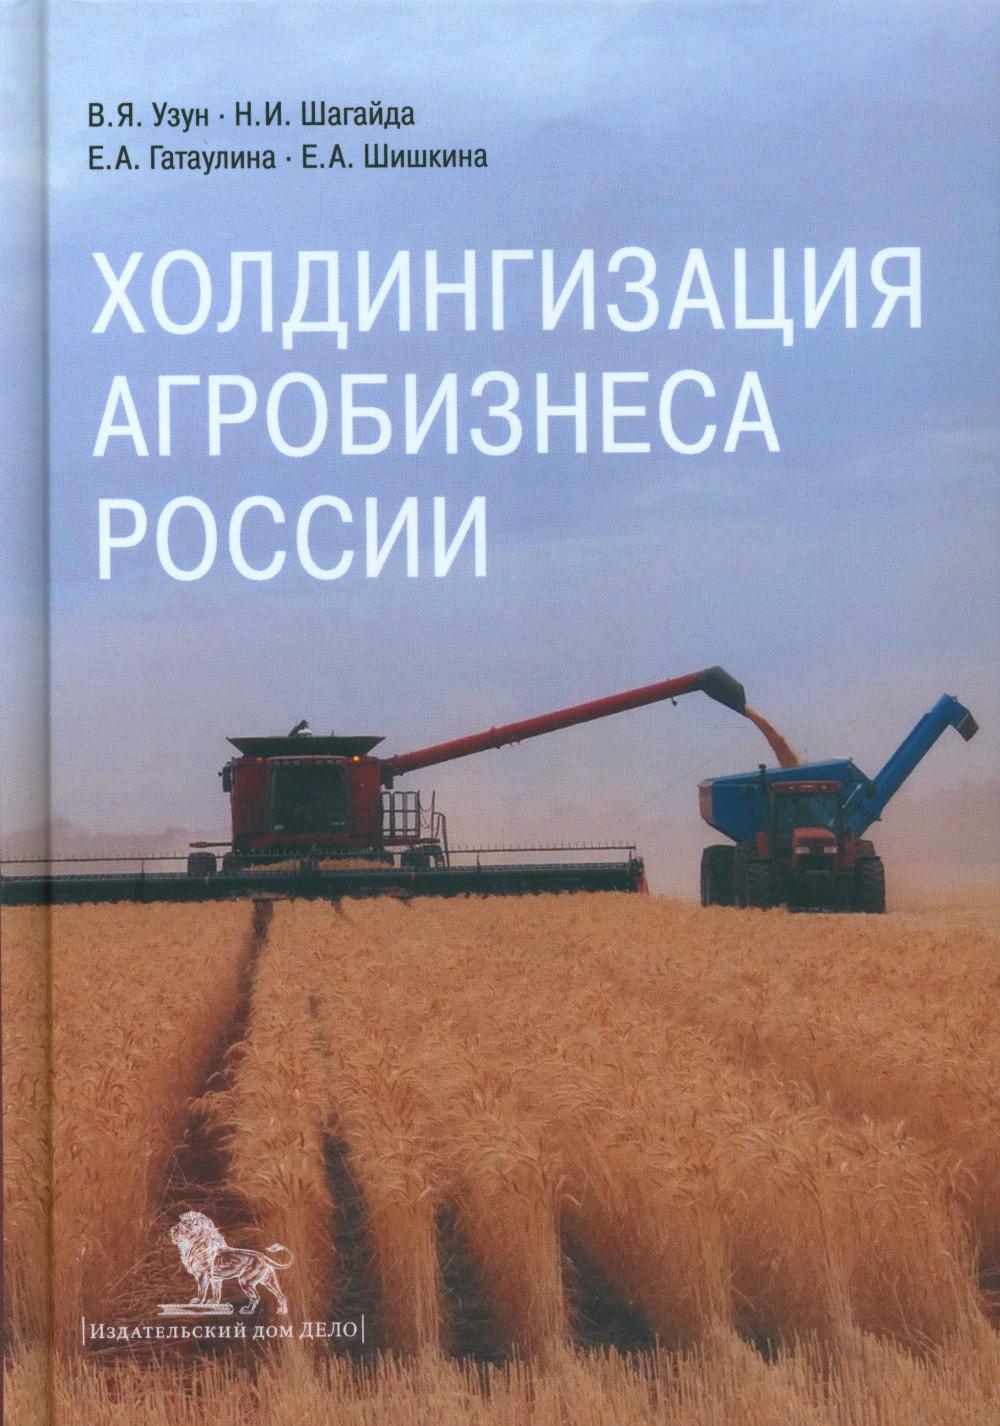 фото Книга холдингизация агробизнеса россии дело